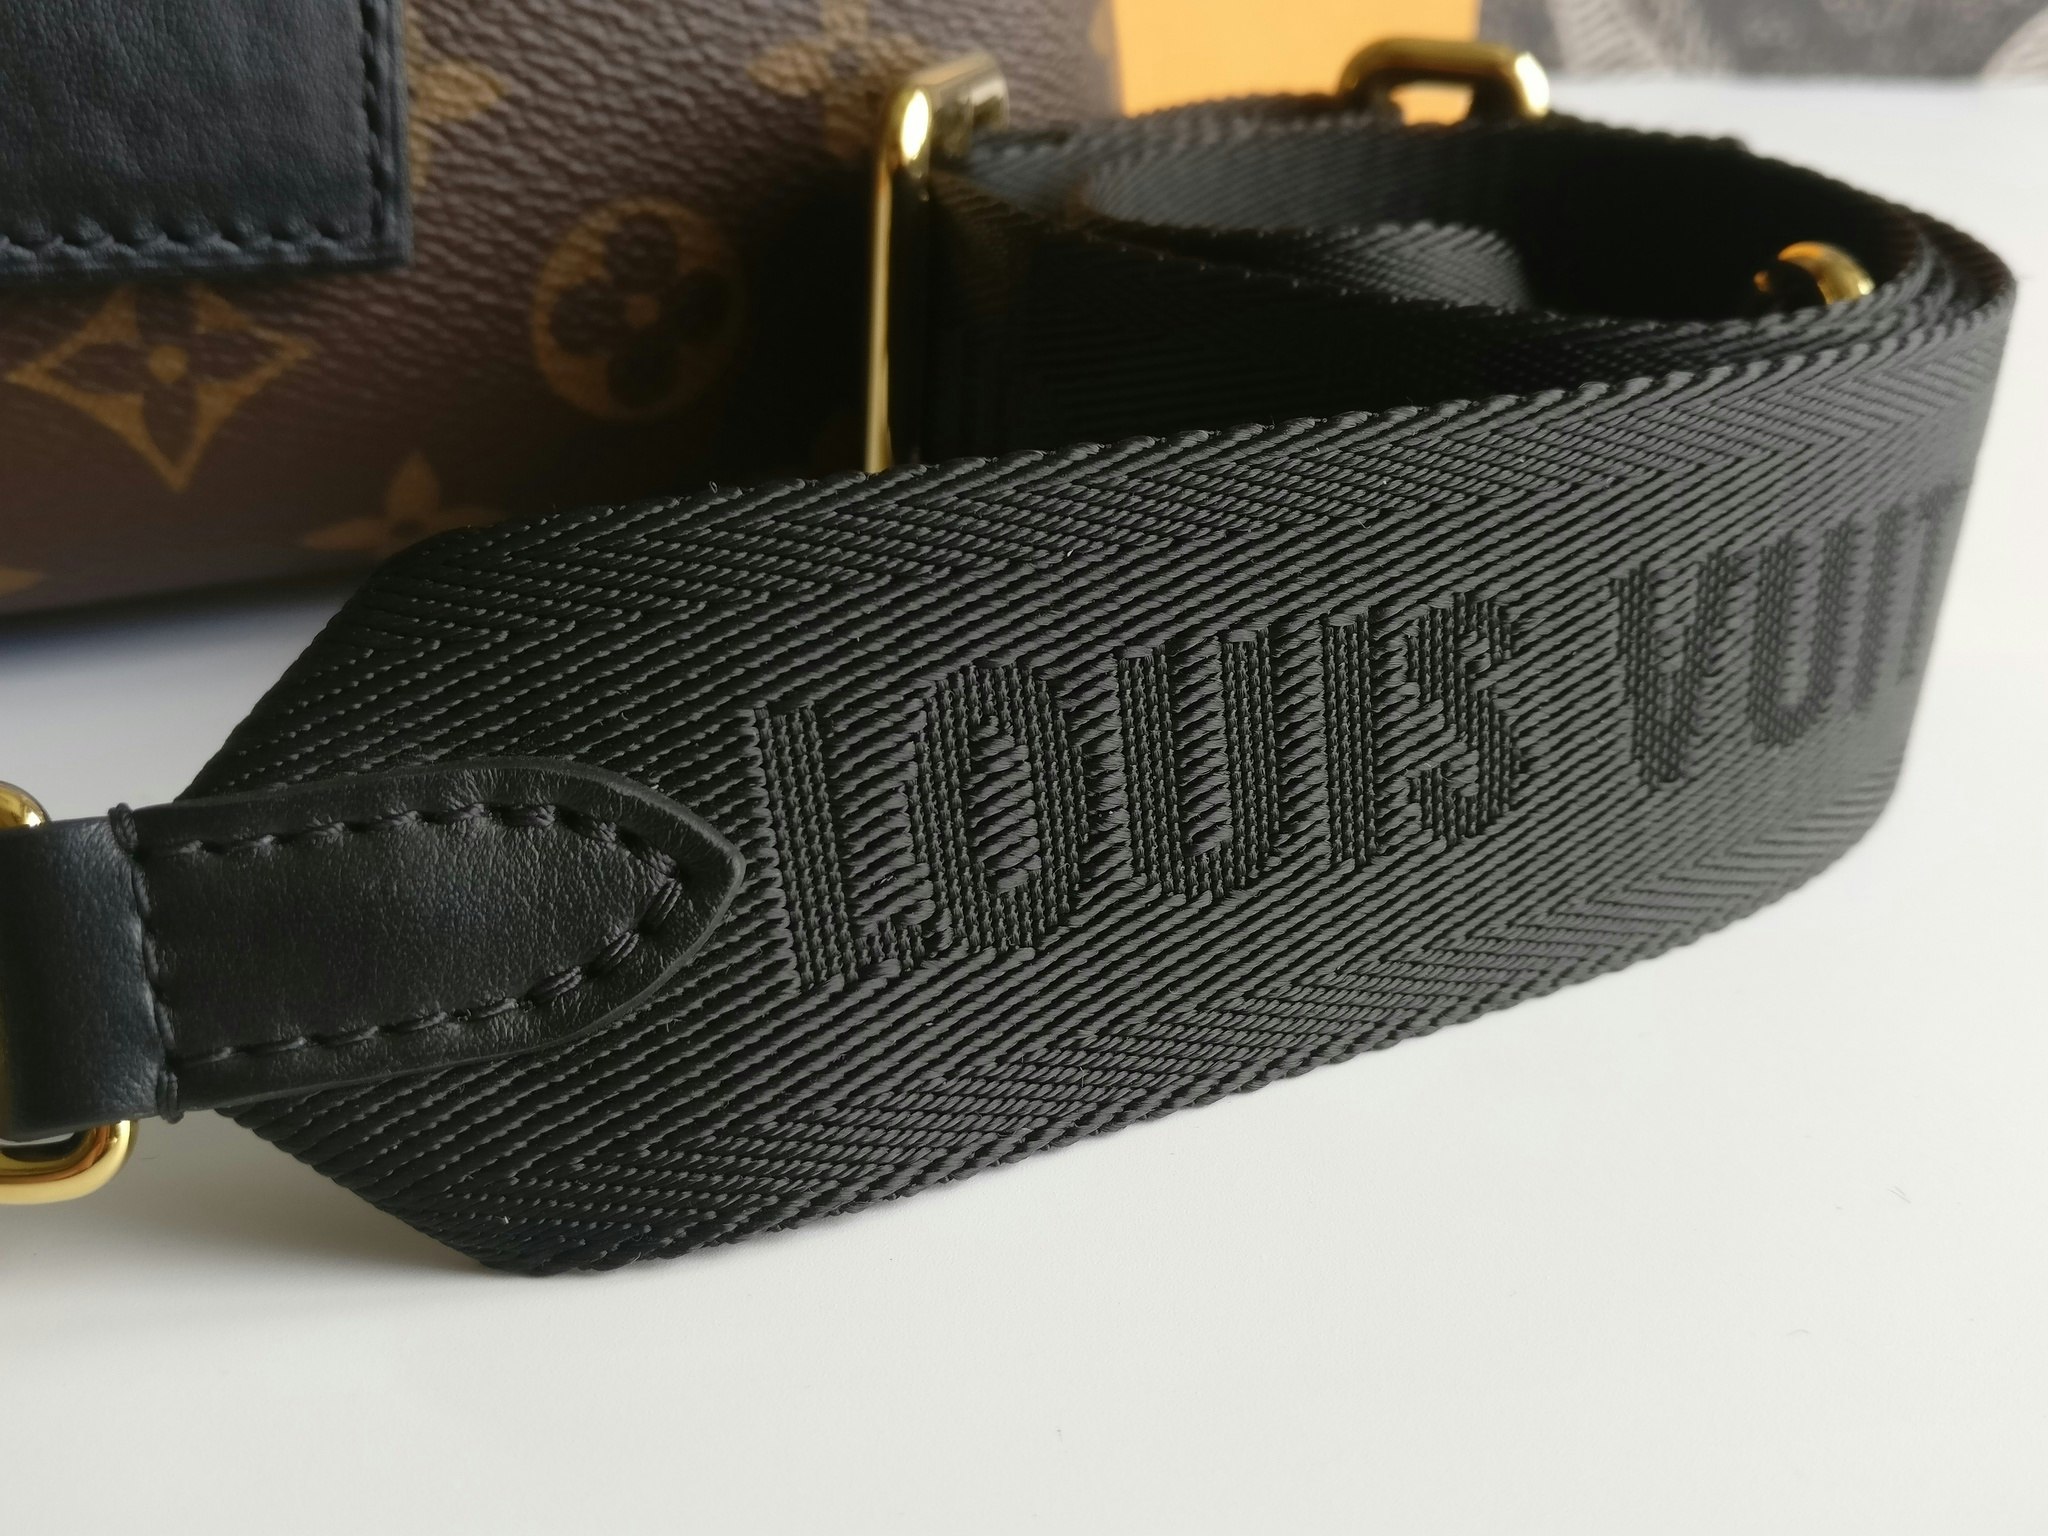 Louis Vuitton Petite Malle Souple